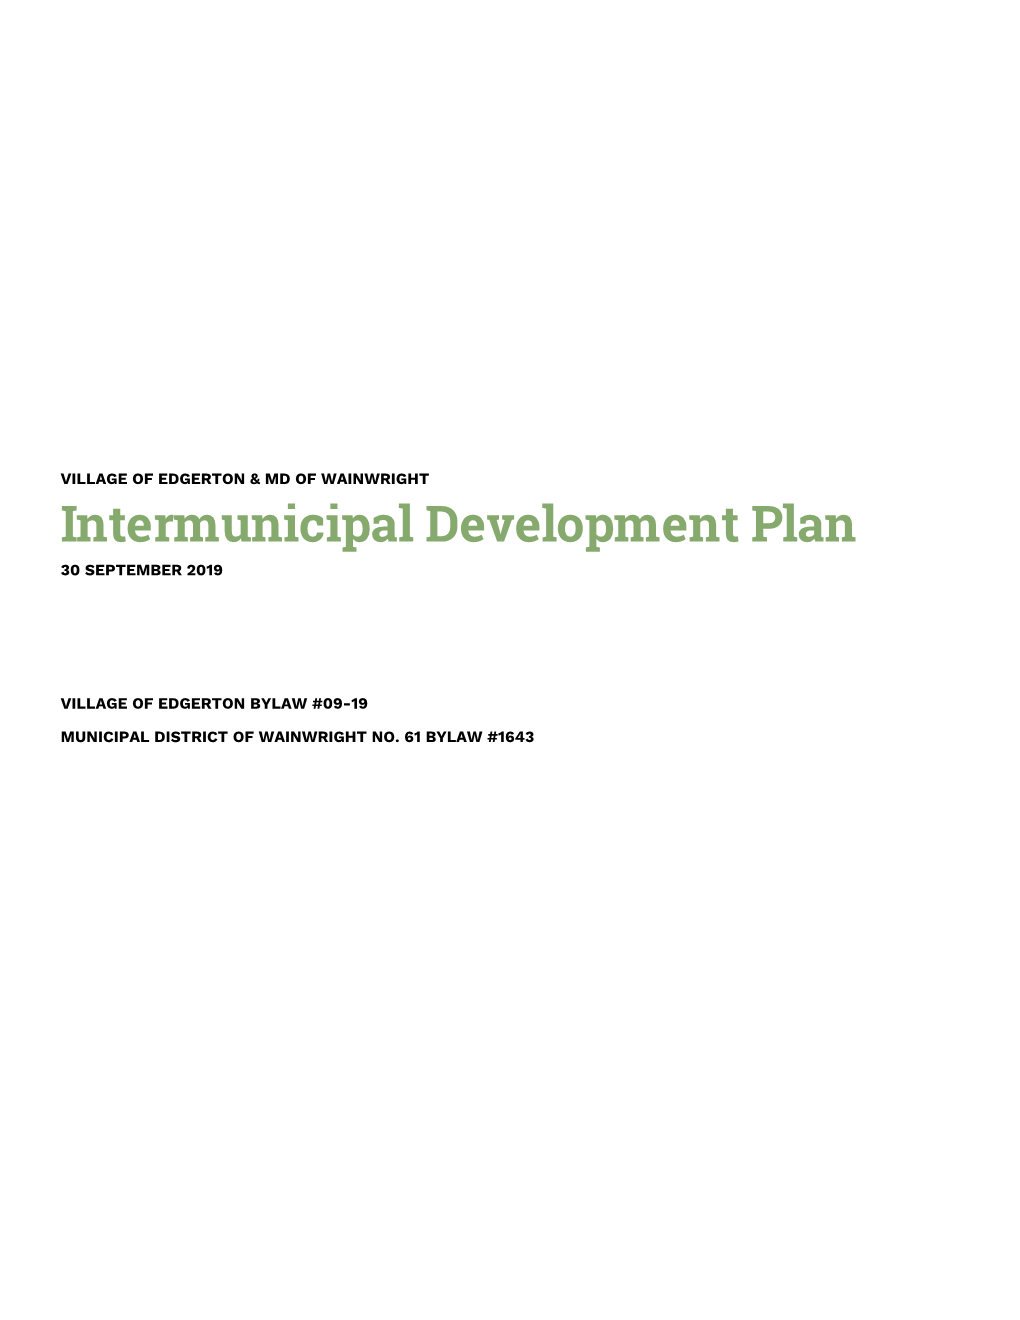 Intermunicipal Development Plan 30 SEPTEMBER 2019